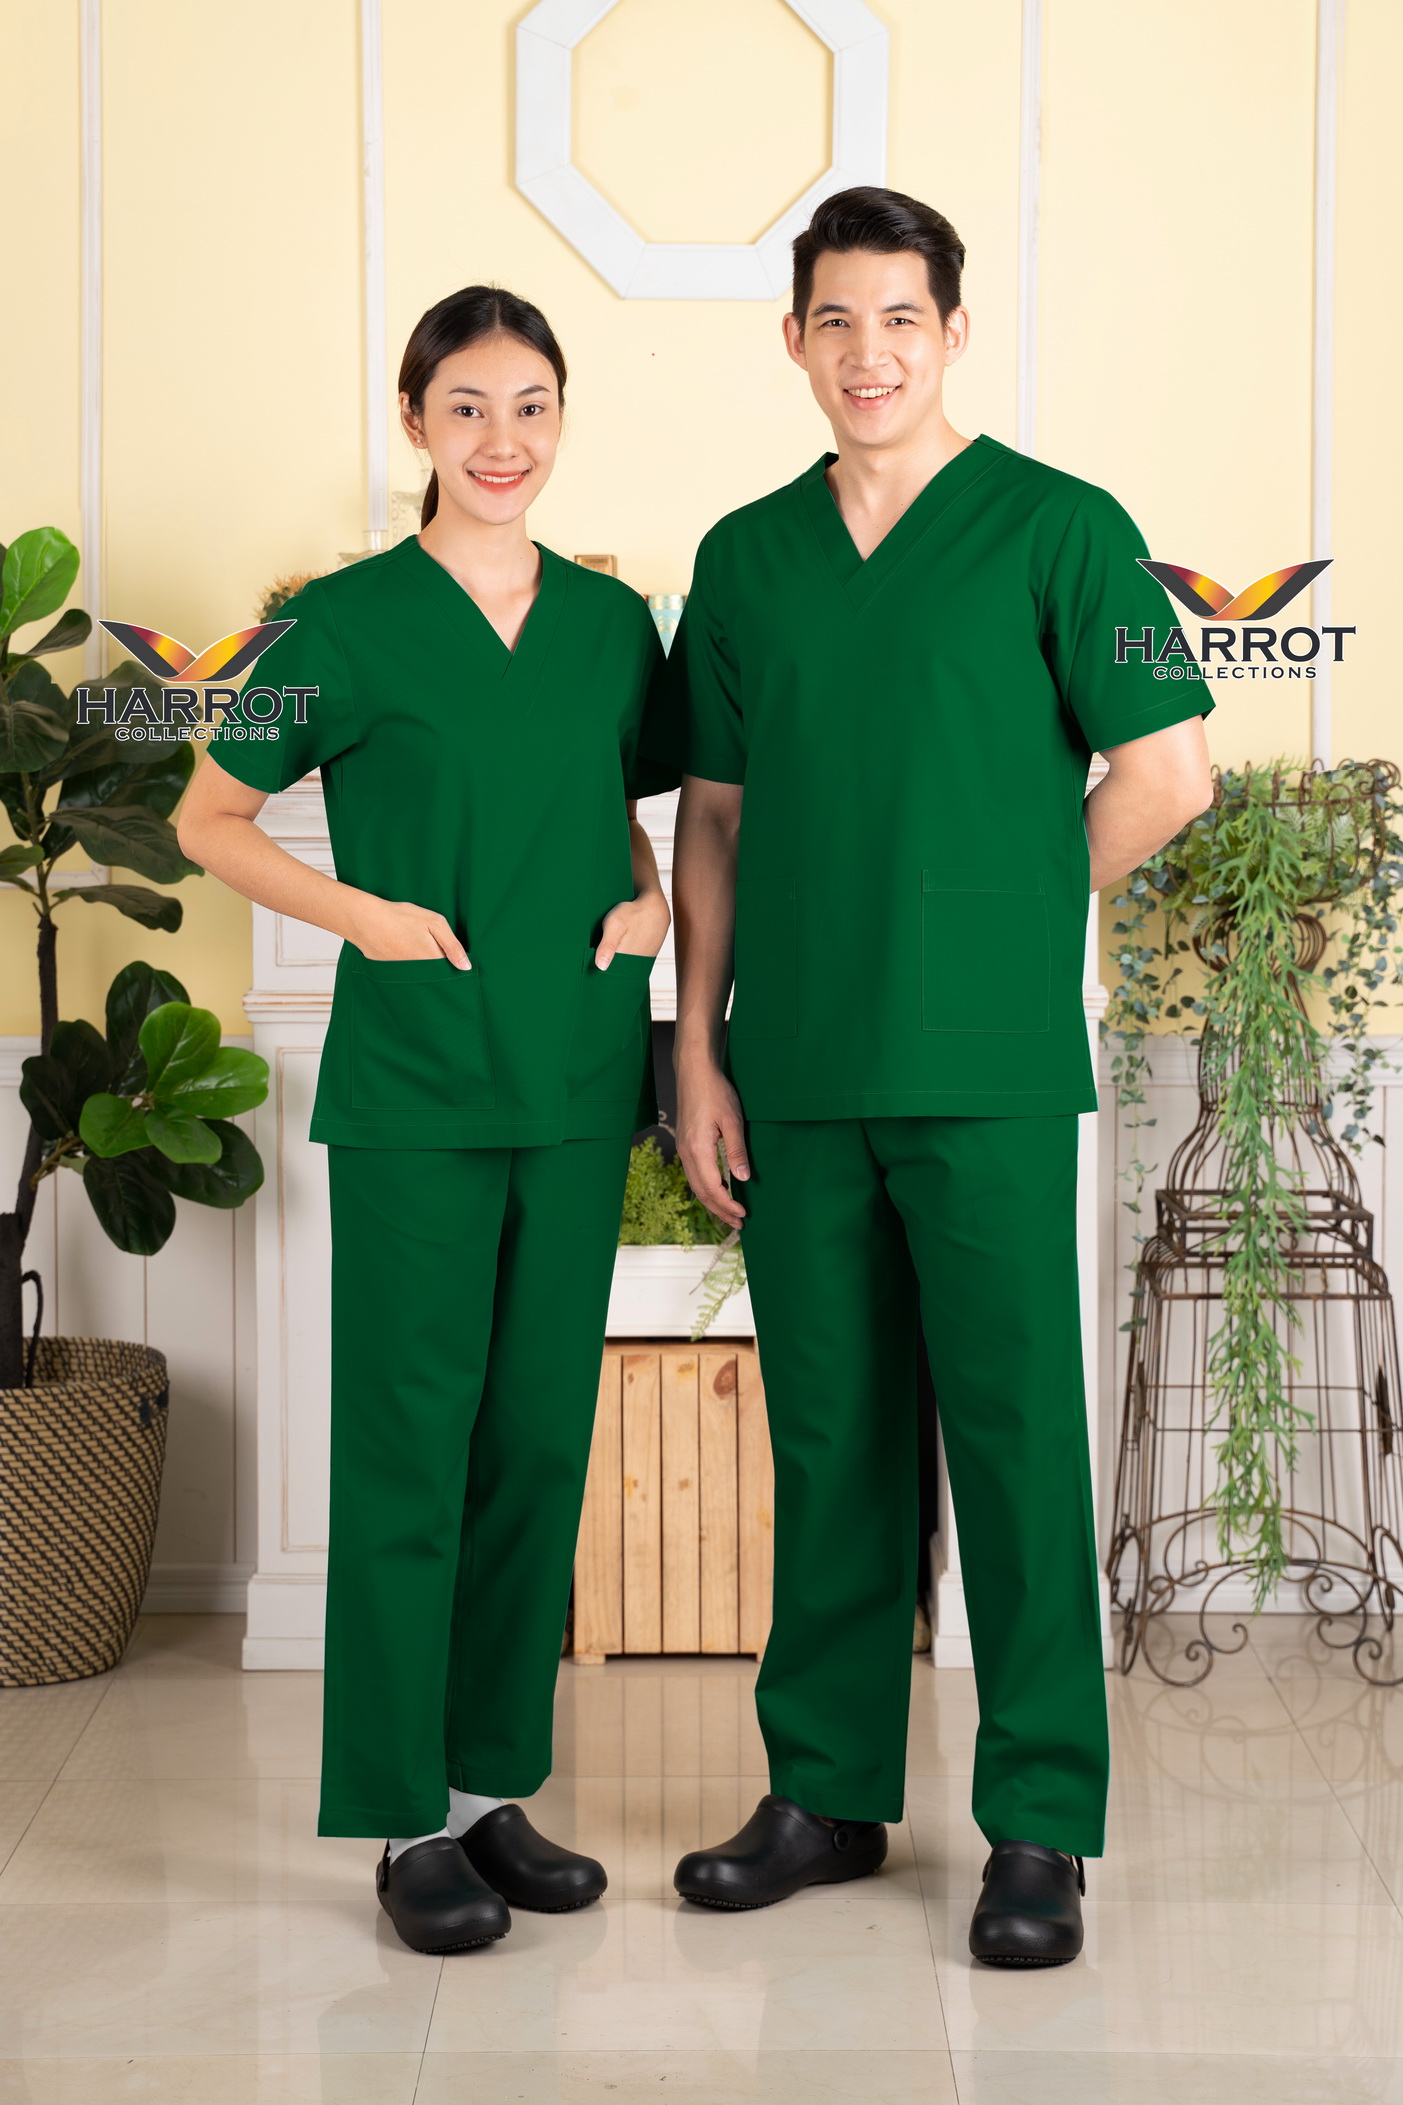 ชุดสครับ ชุดพยาบาล สีเขียวเข้ม (เสื้อ+กางเกง) (HPG0154)